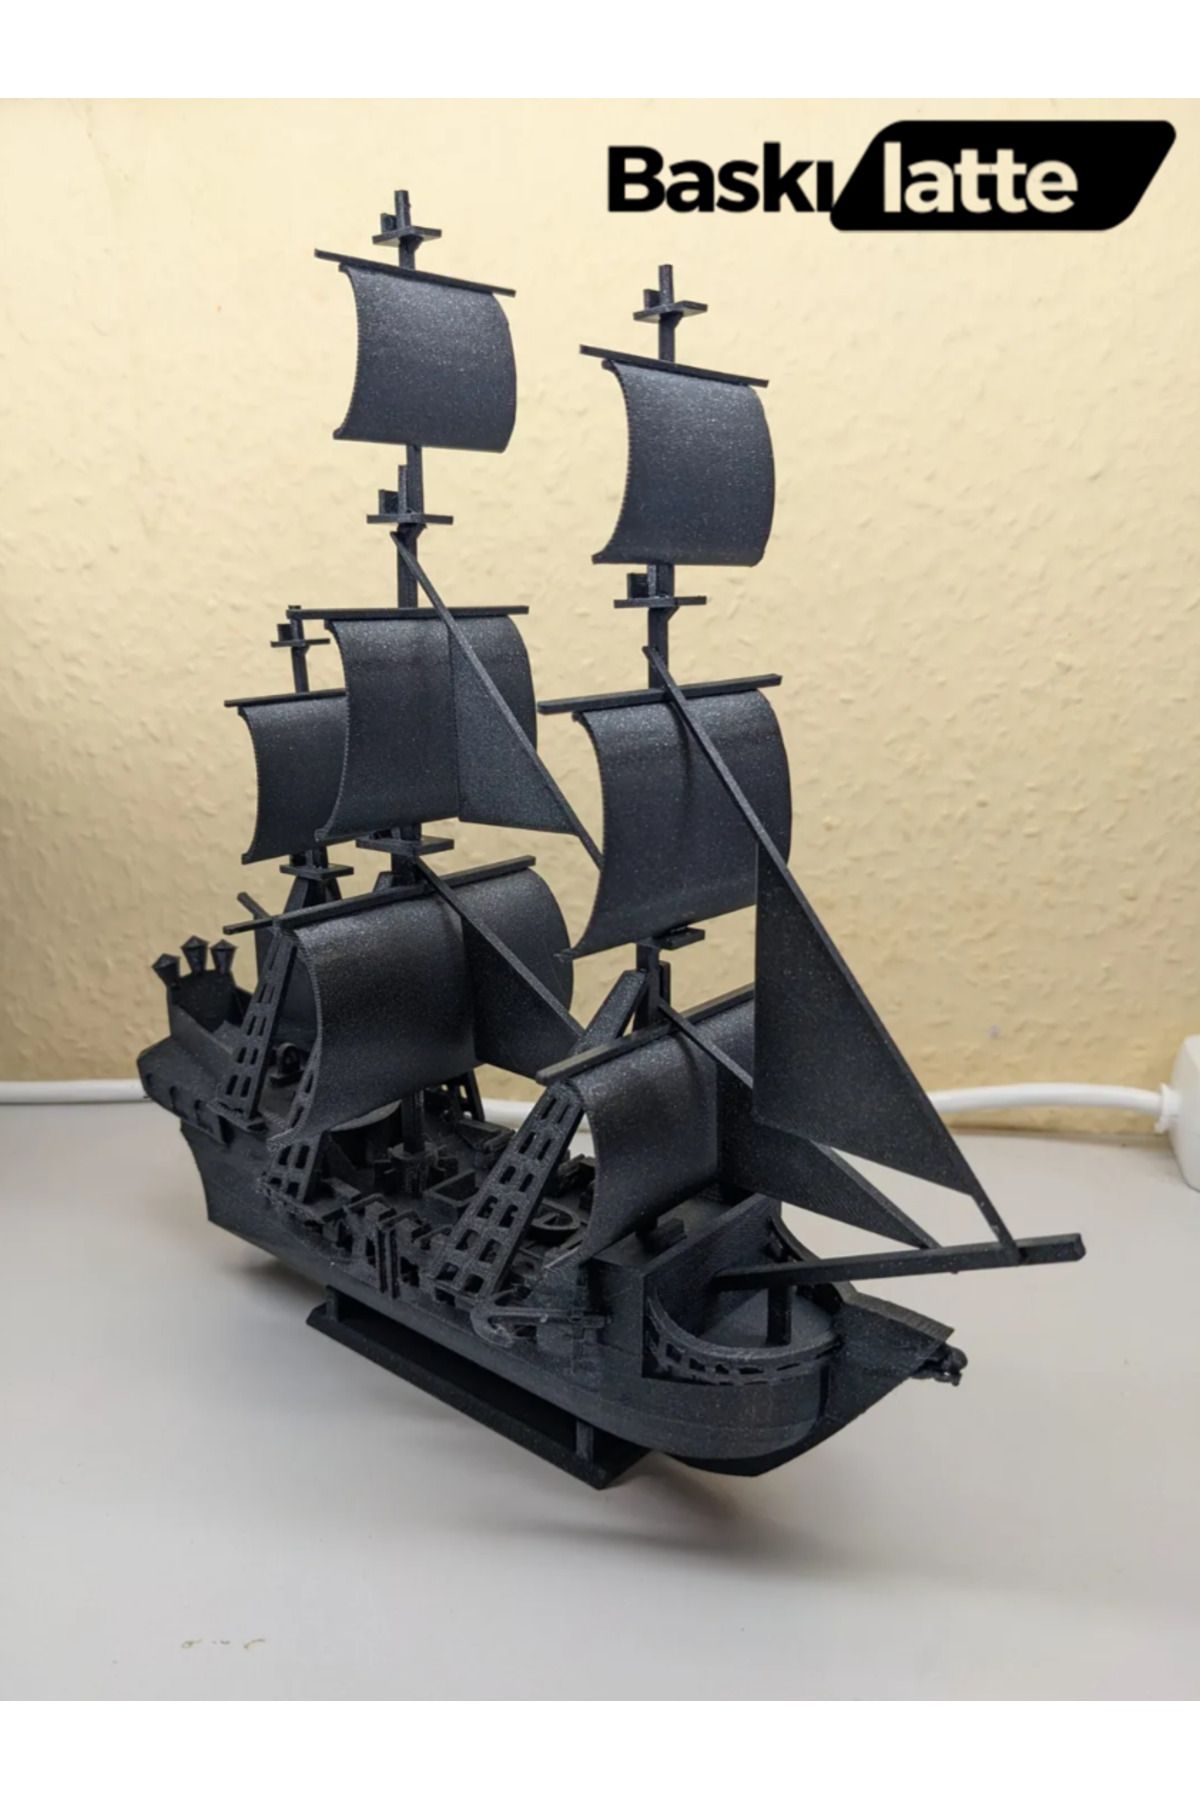 Baskılatte Siyah İnci Gemi Maketi (52 parça halinde gönderilir)